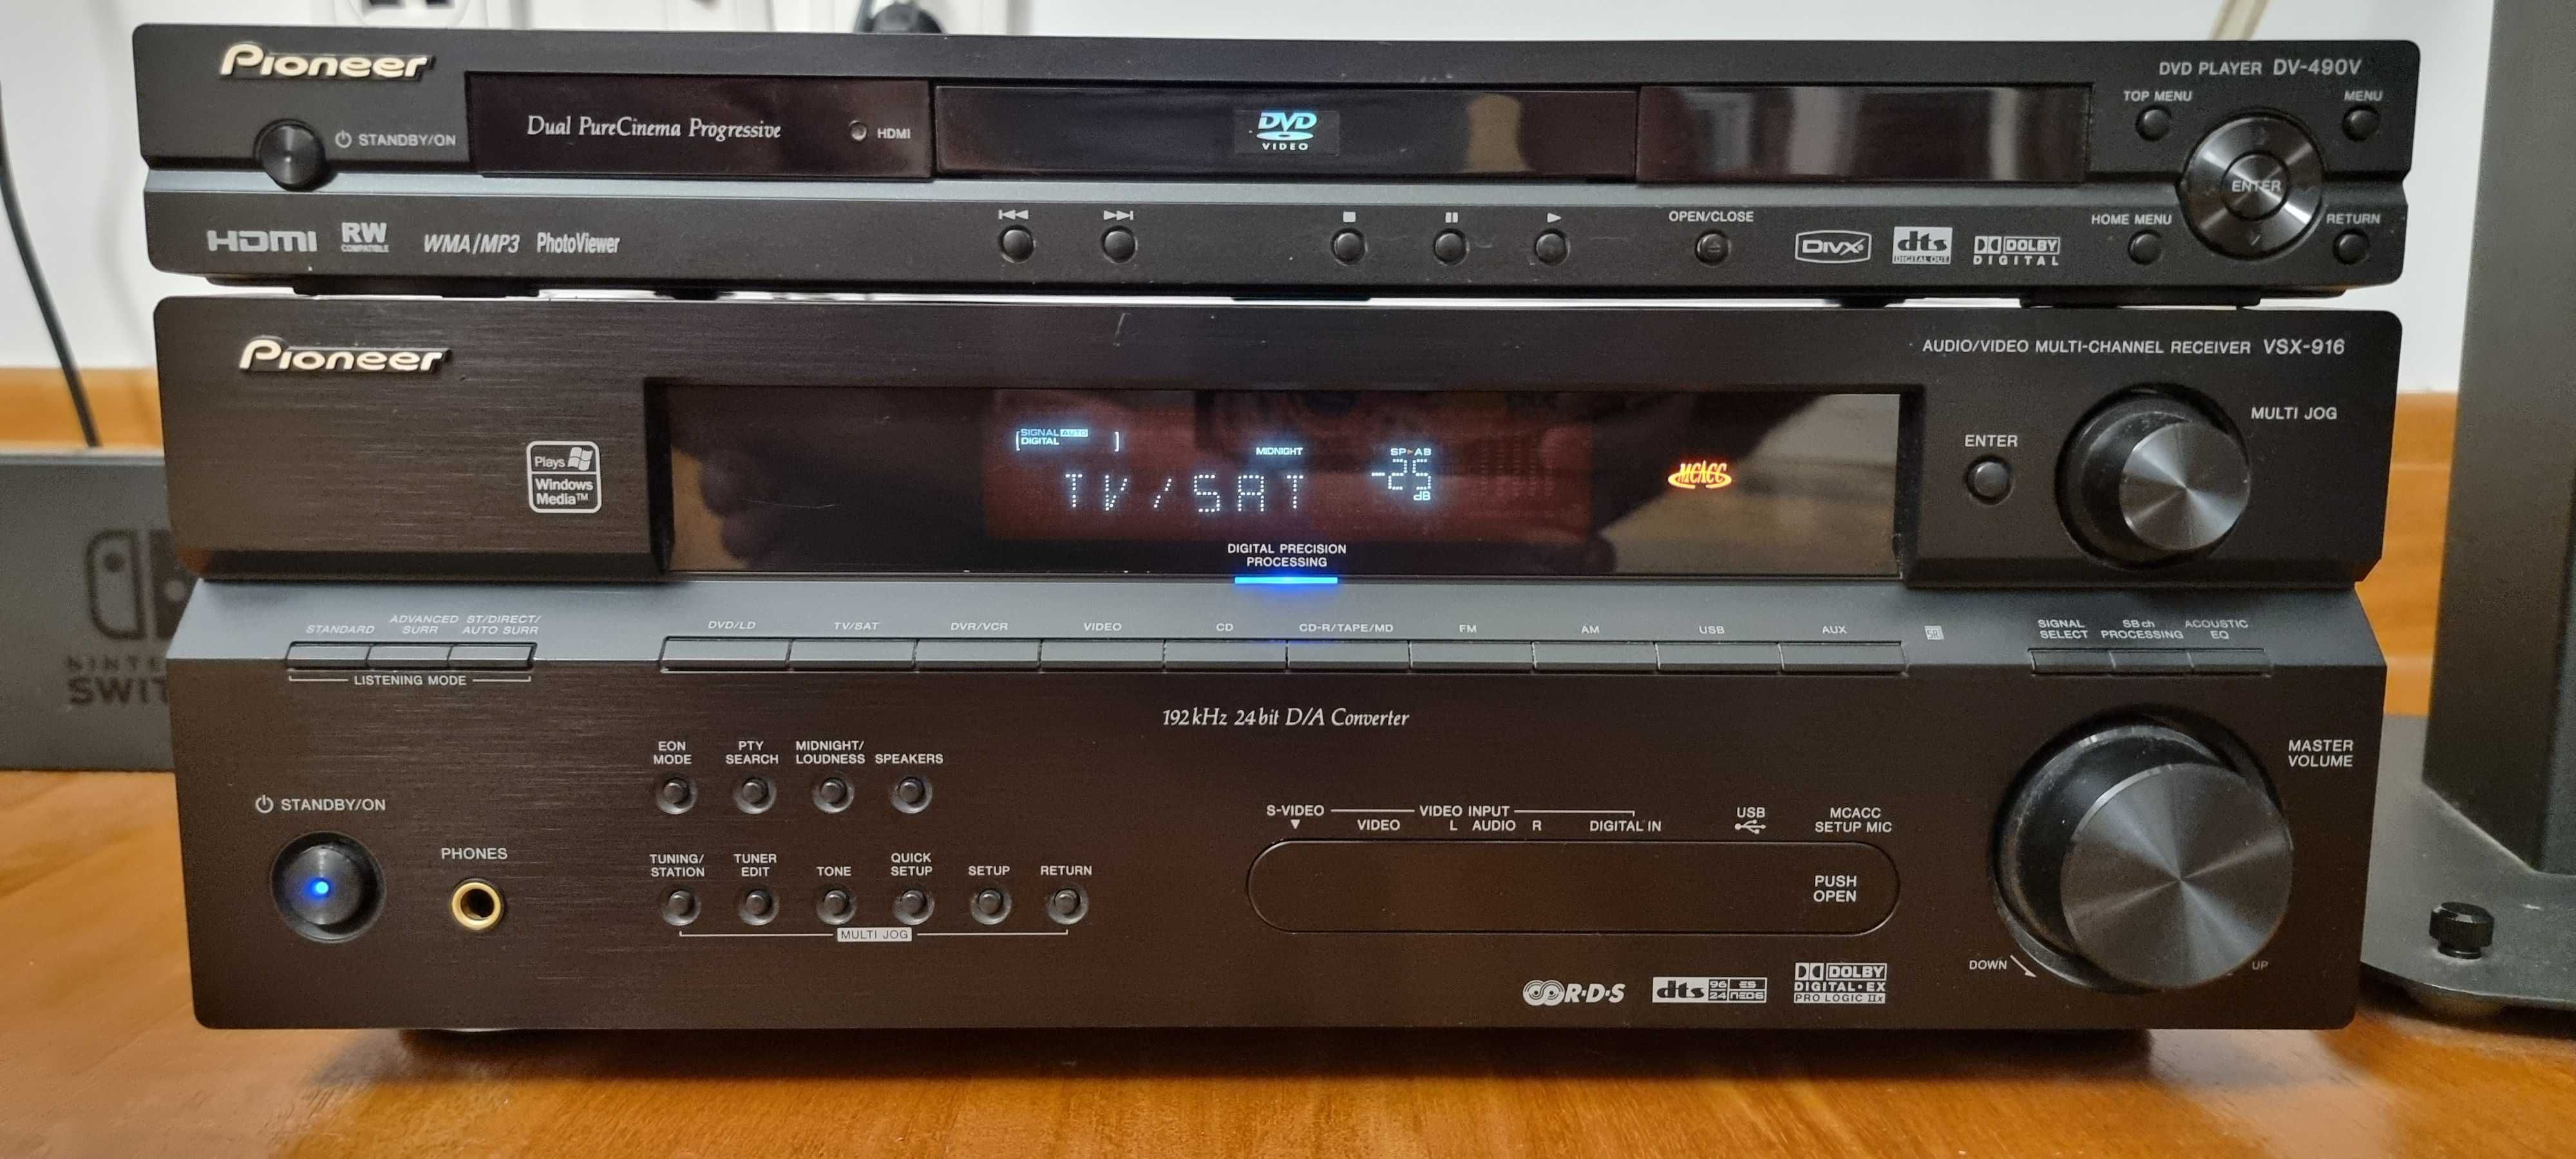 Amplituner AV Pioneer VSX-916 + DVD Pioneer DV-490V